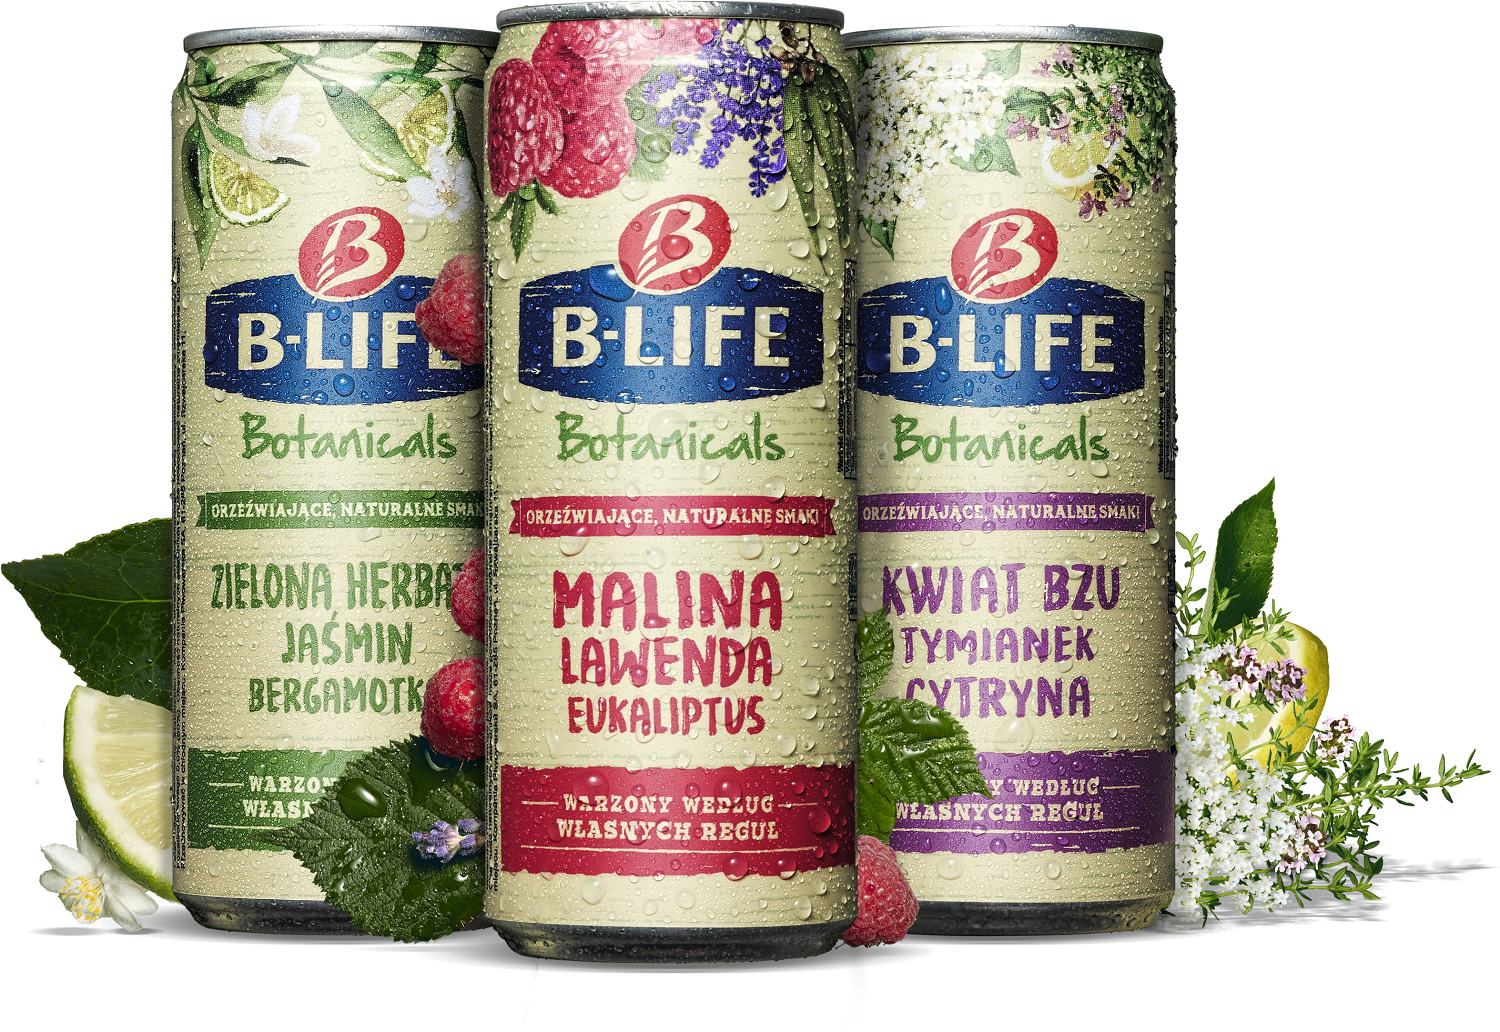 Sięgnij po swoją prawdziwą naturę!  Kompania Piwowarska wprowadza na rynek innowacyjny warzony napój botaniczny: B-Life  Botanicals.